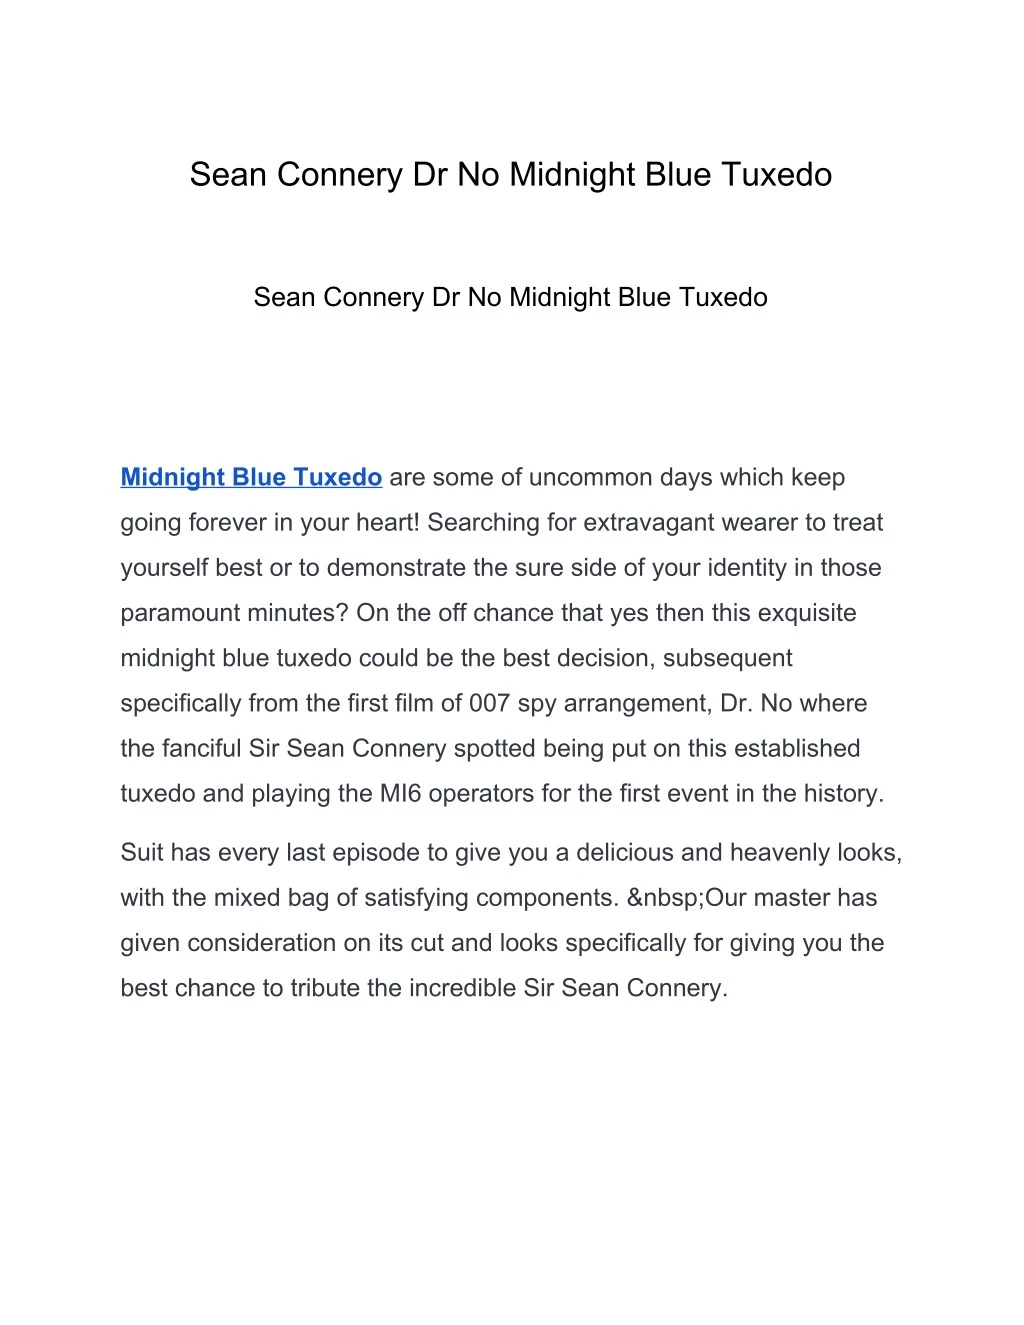 sean connery dr no midnight blue tuxedo